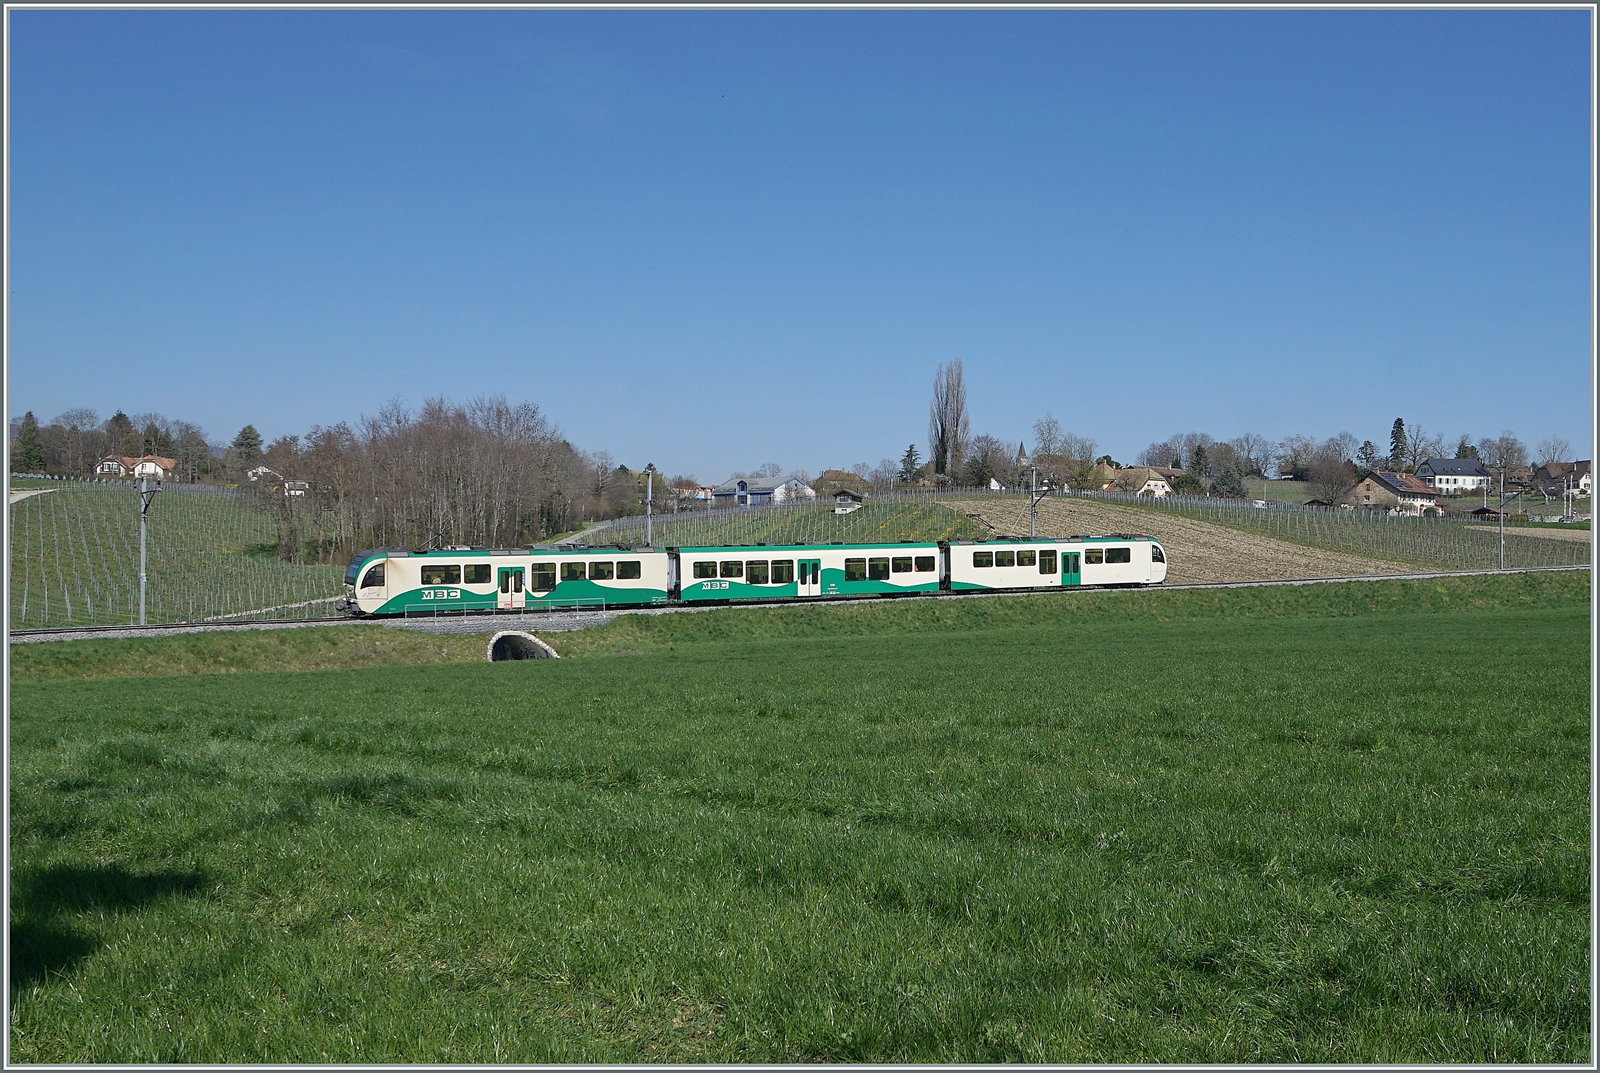 Ein BAM MBC Regionalzug von Morges nach Bière bestehen aus zwei SURF  Be 4/4  und einem Mittelwagen erreicht in Kürze den Halt Vufflens le Château.

5. April 2023